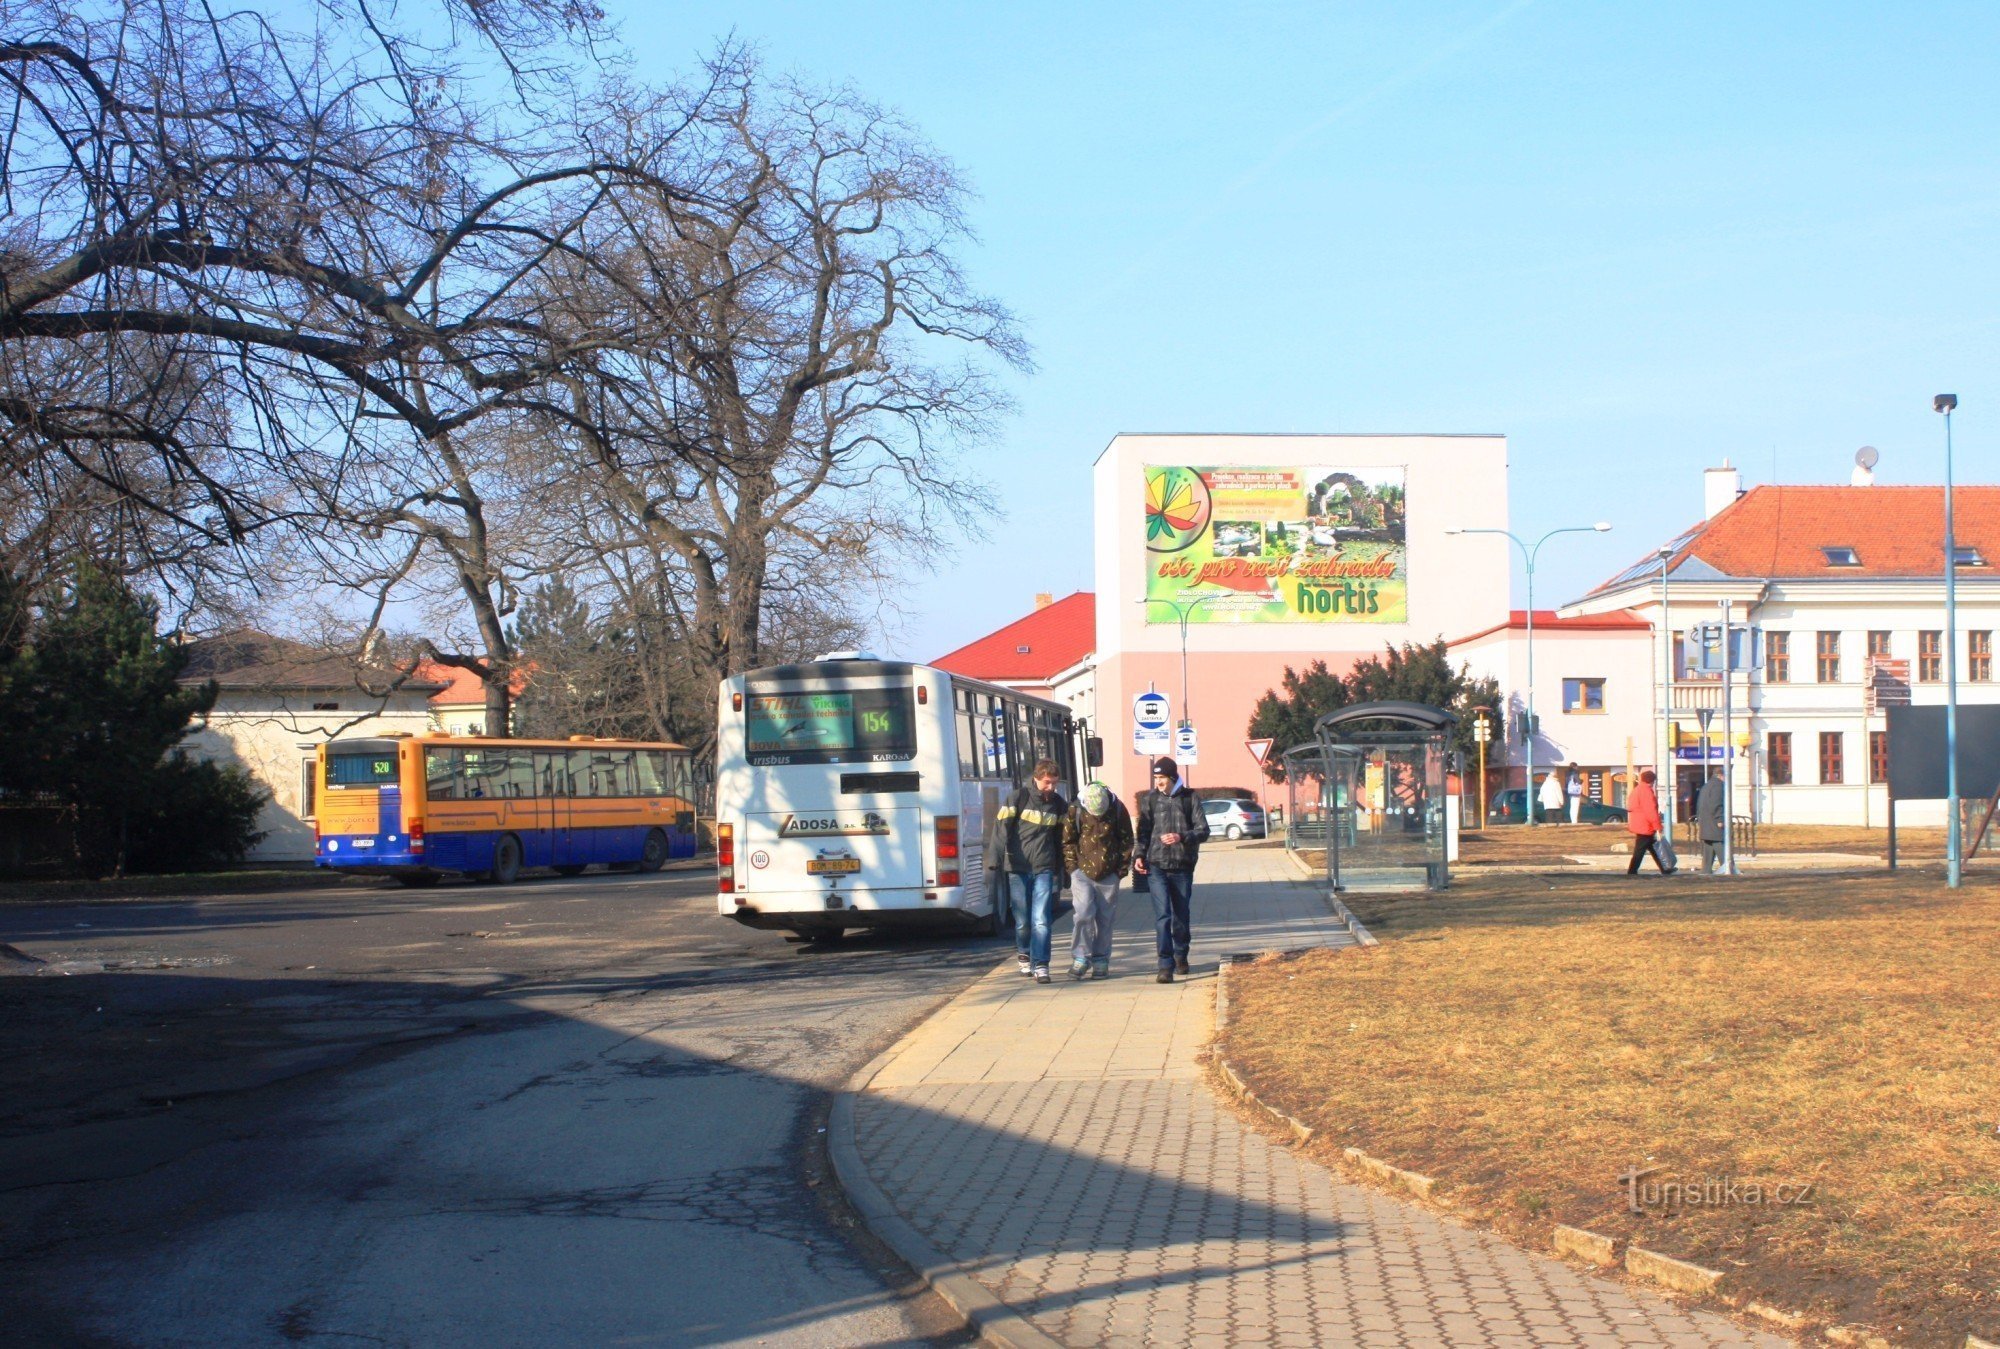 Der Busbahnhof befindet sich am Rande des Schlossparks